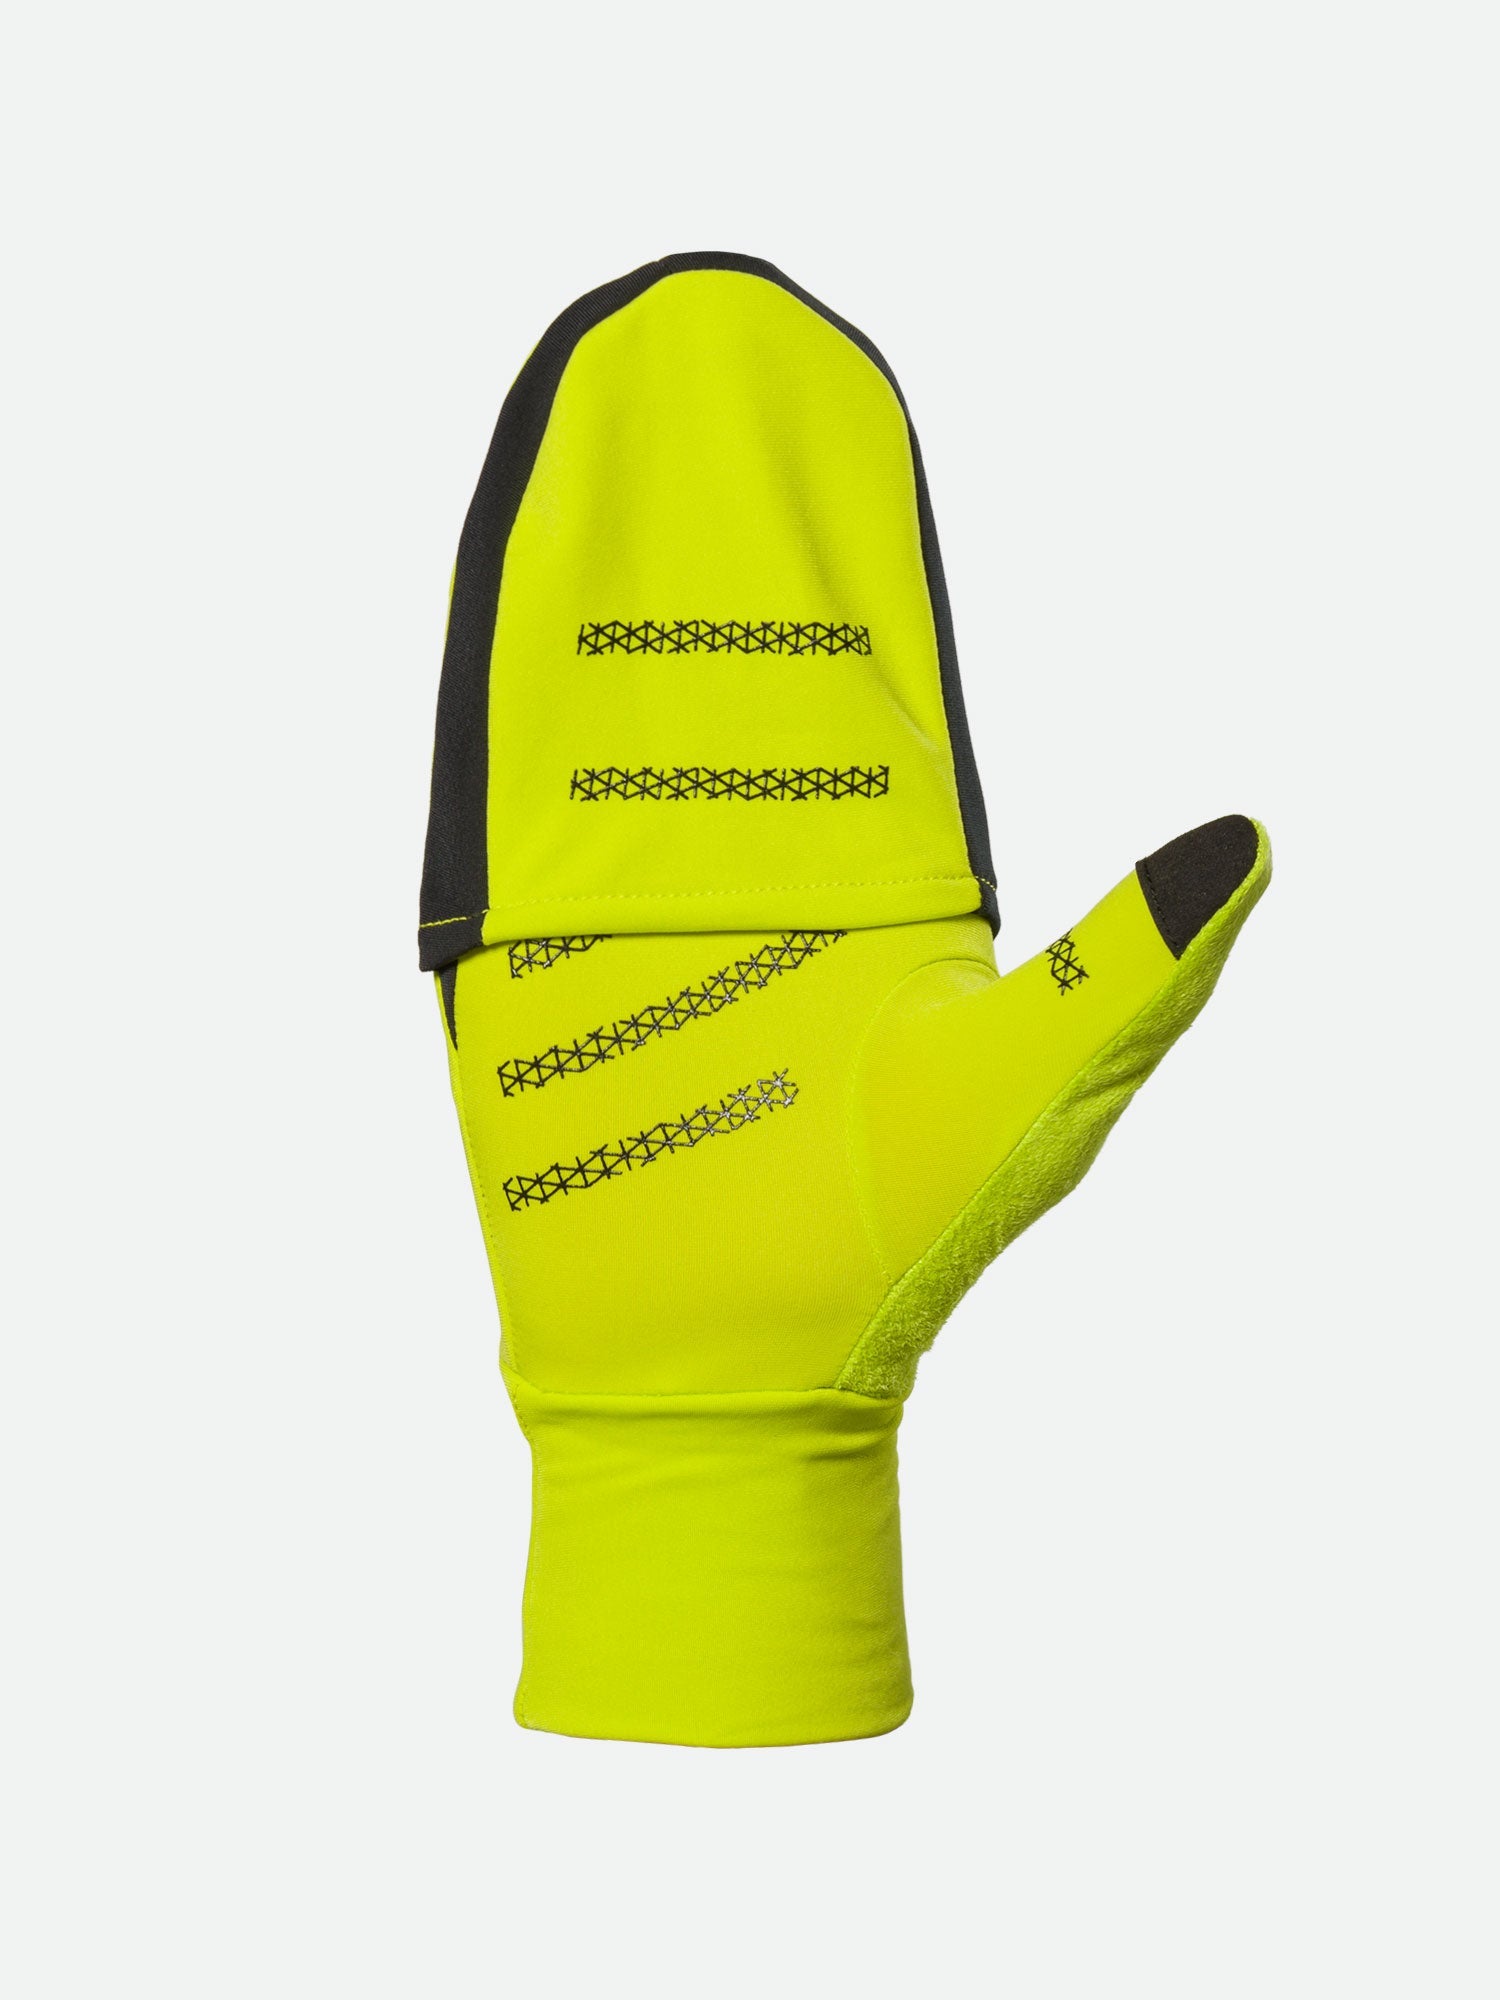 Men's Running Gloves & Convertible Glove Mittens